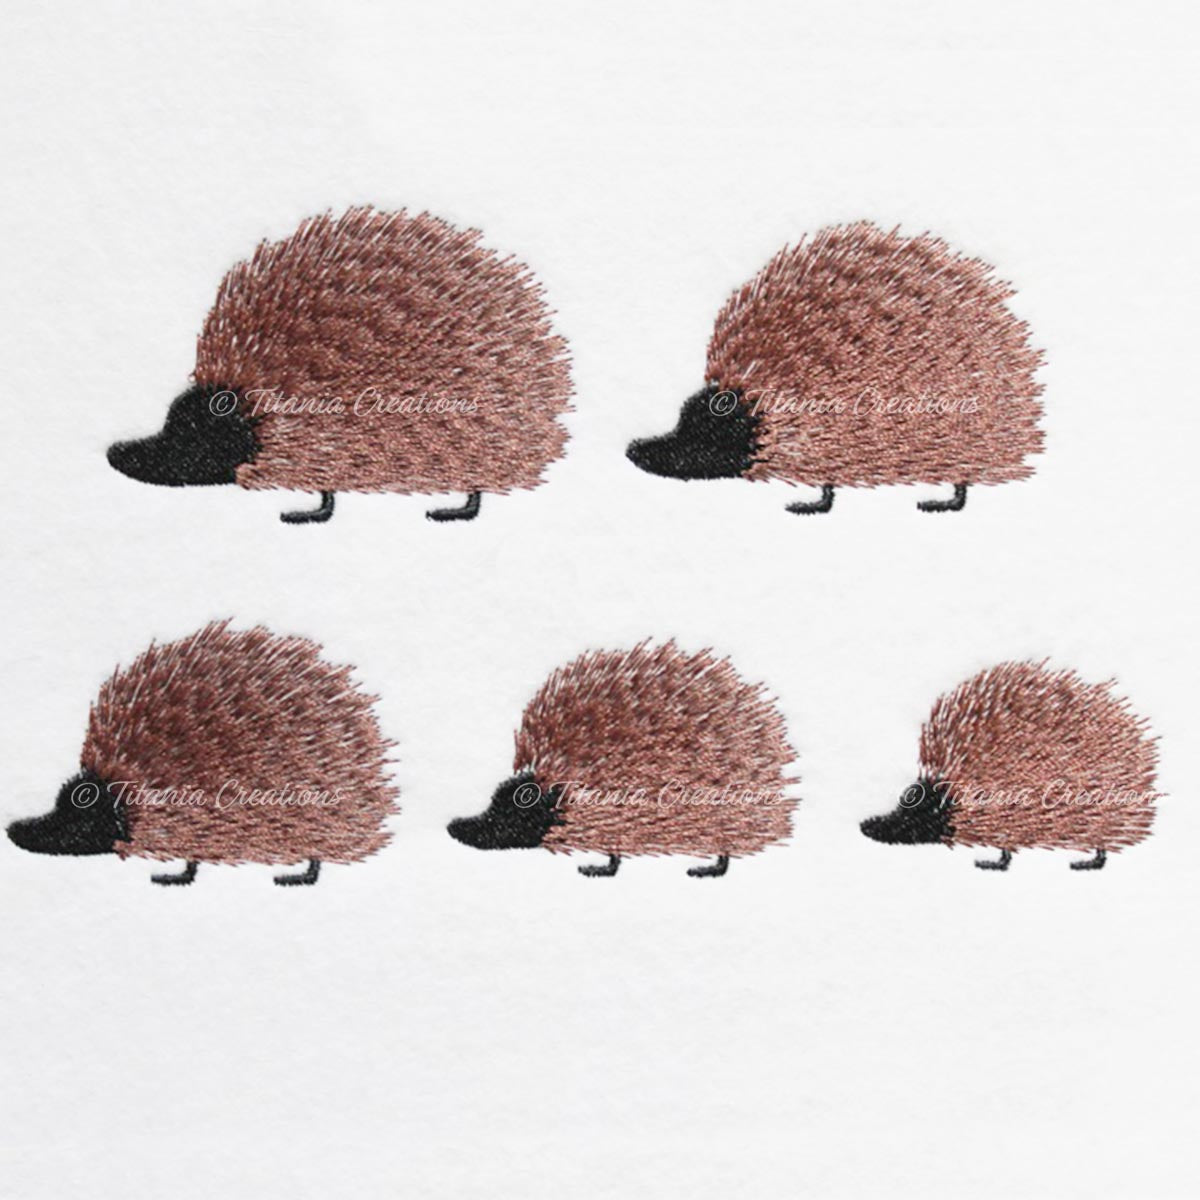 Prim Hedgehog Family 4x4 Set of Five